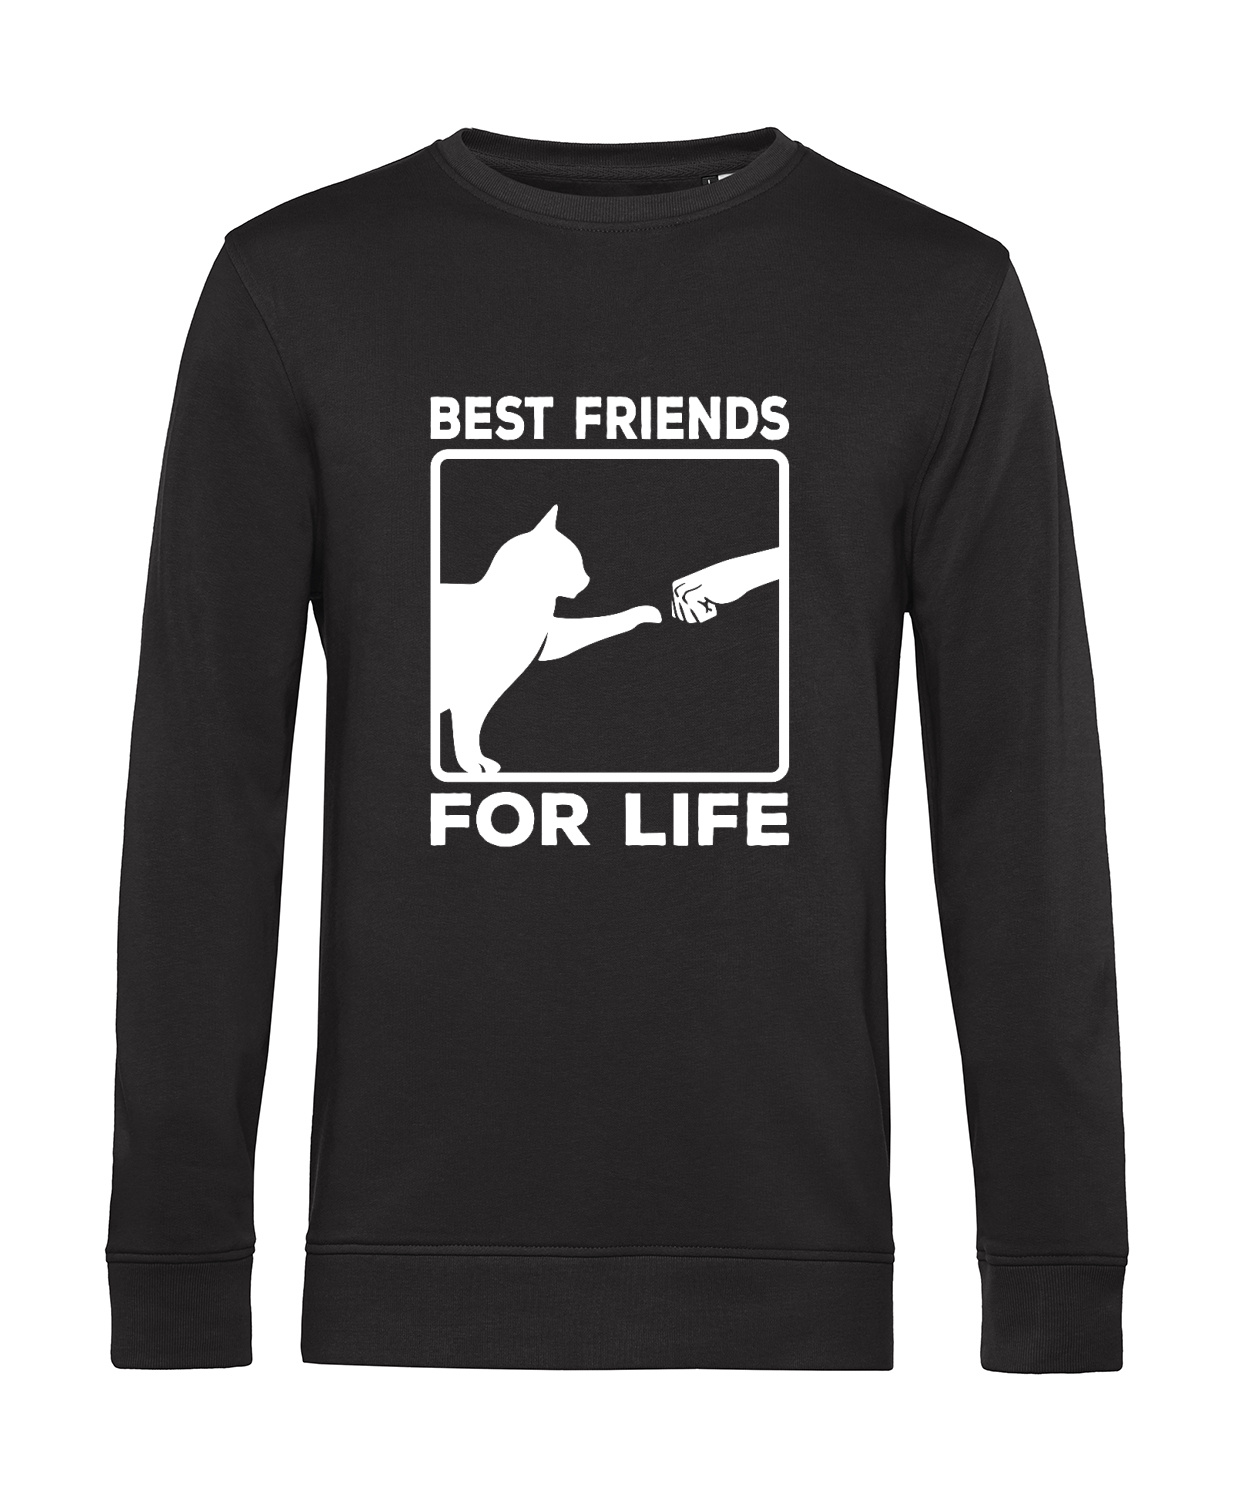 Nachhaltiges Sweatshirt Herren Katzen - Best friends for life